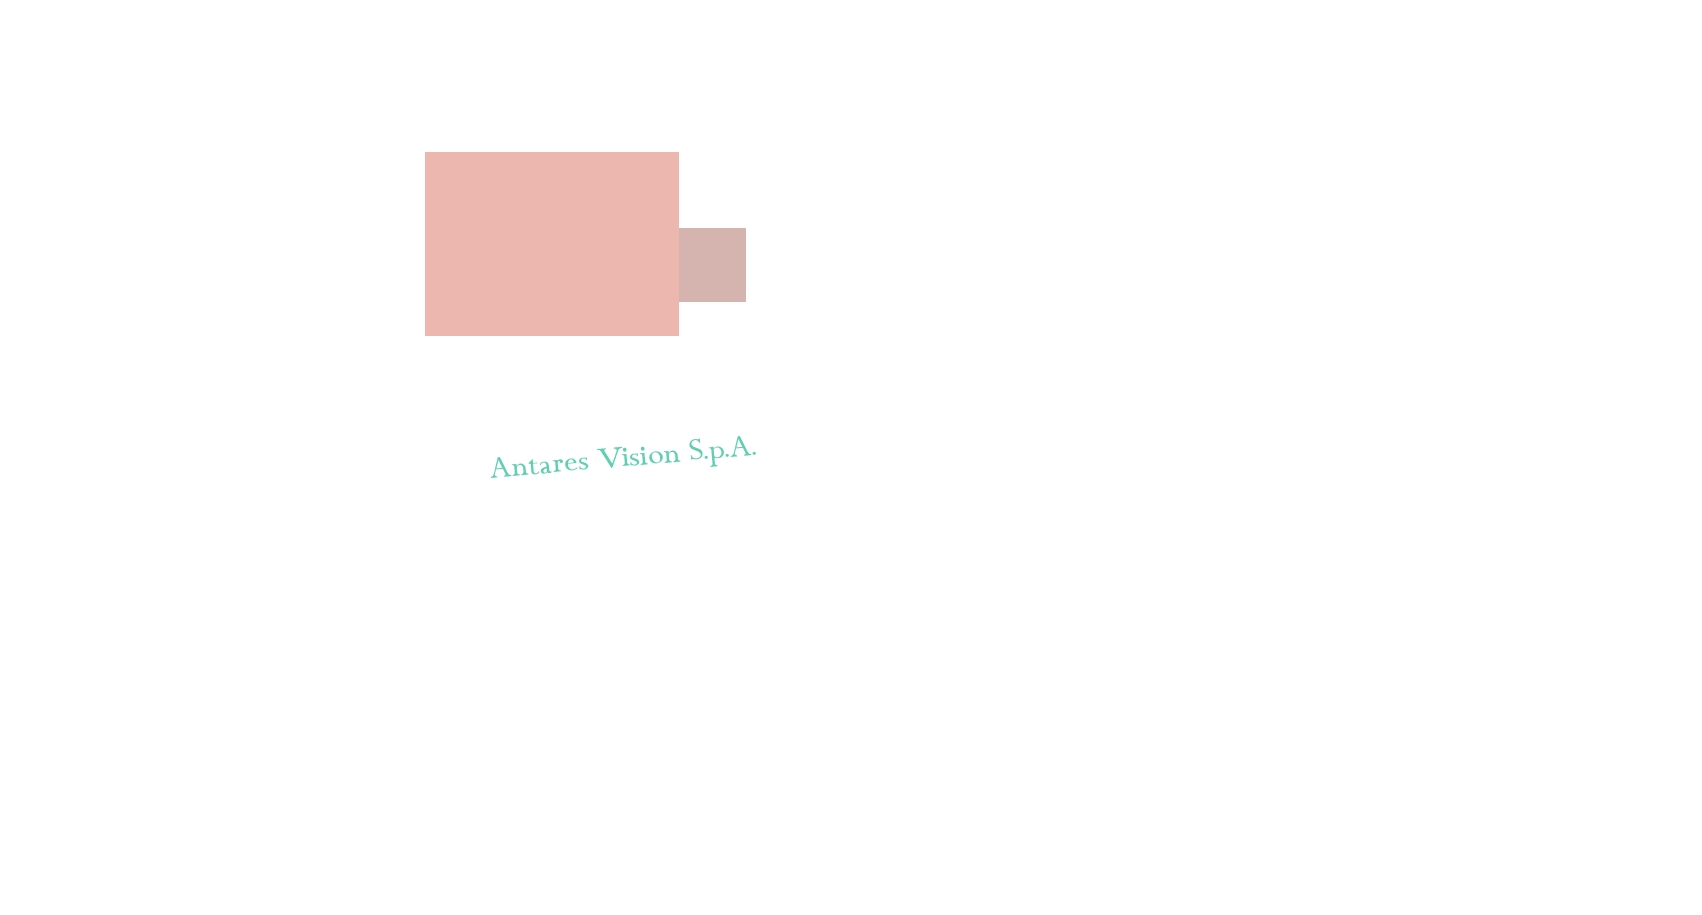 logo Antares Vision S.p.A.